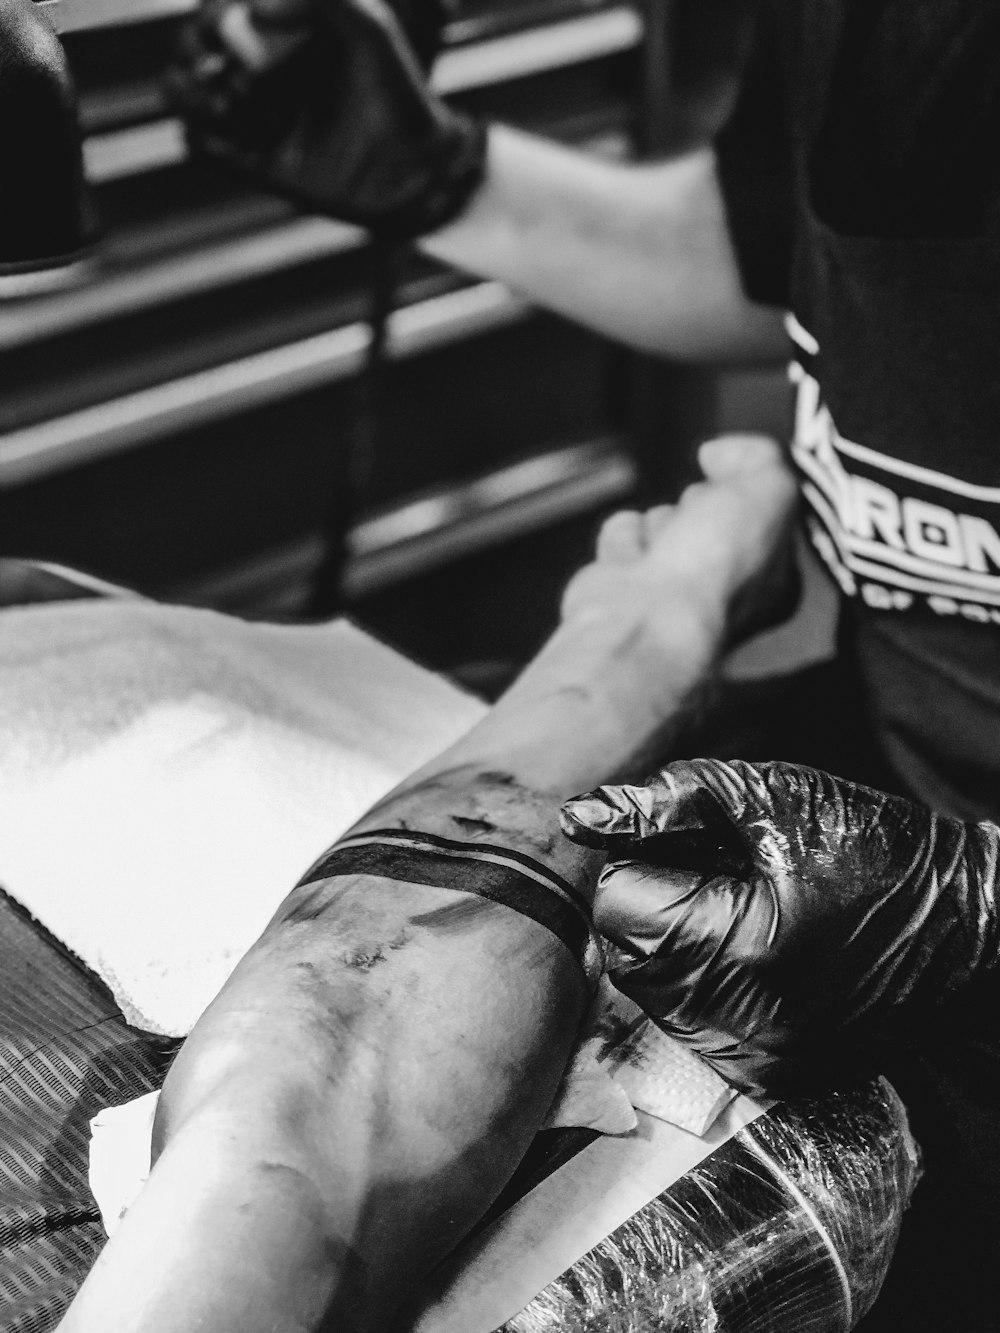 Una foto en blanco y negro de una persona haciéndose un tatuaje